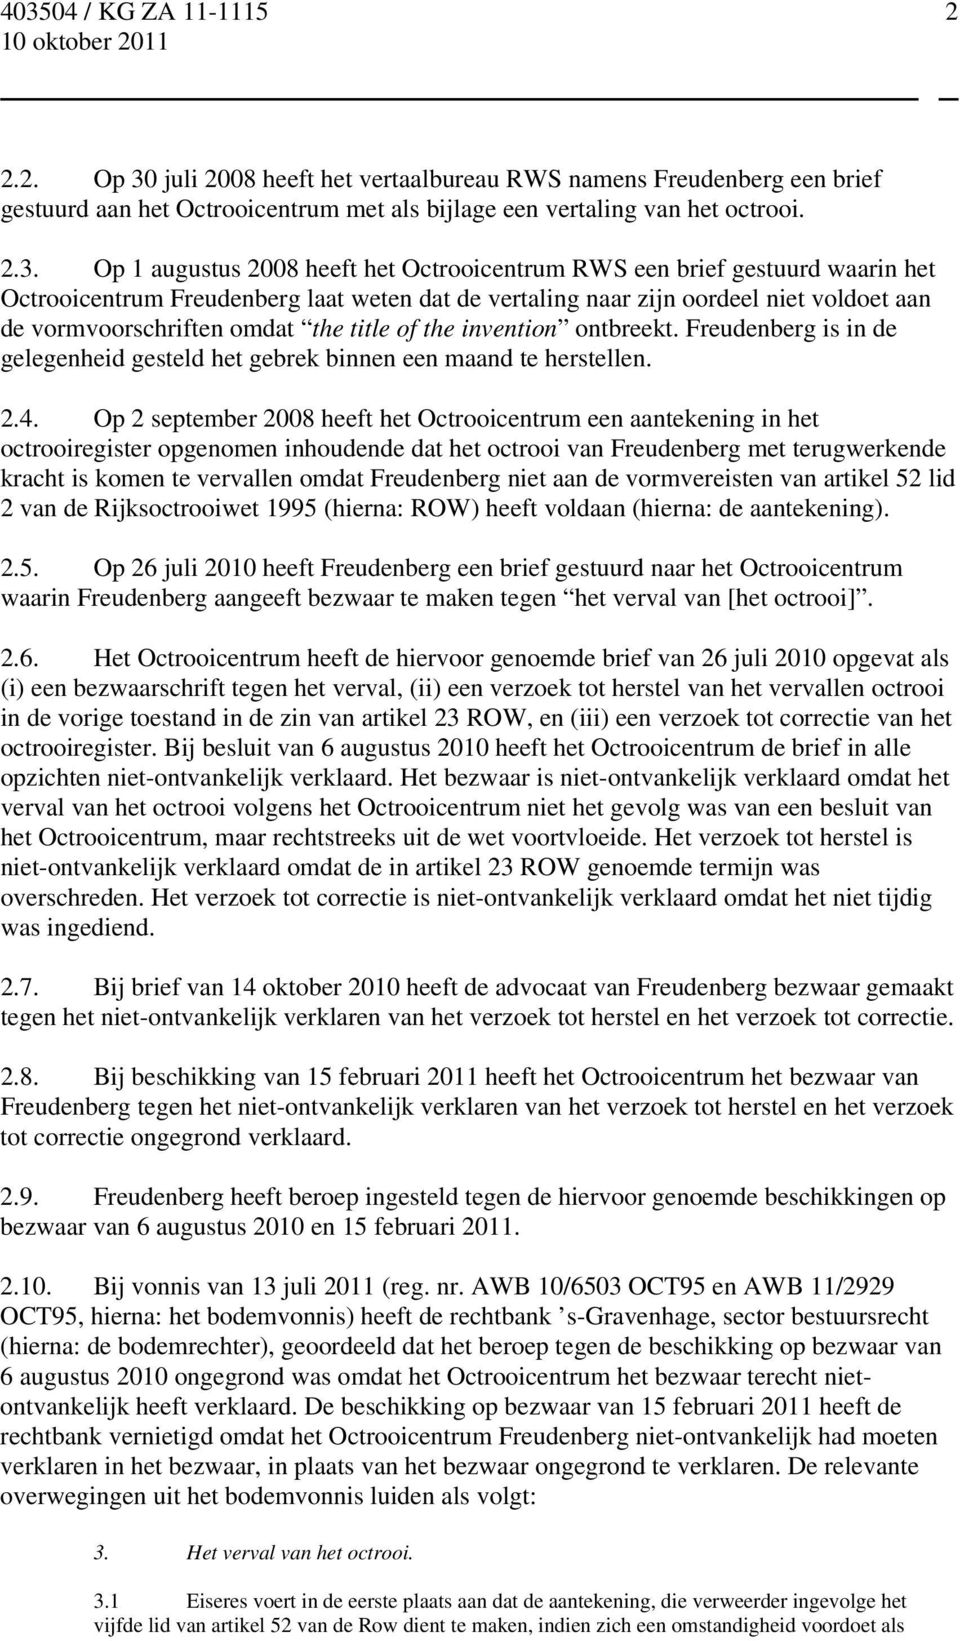 Op 1 augustus 2008 heeft het Octrooicentrum RWS een brief gestuurd waarin het Octrooicentrum Freudenberg laat weten dat de vertaling naar zijn oordeel niet voldoet aan de vormvoorschriften omdat the